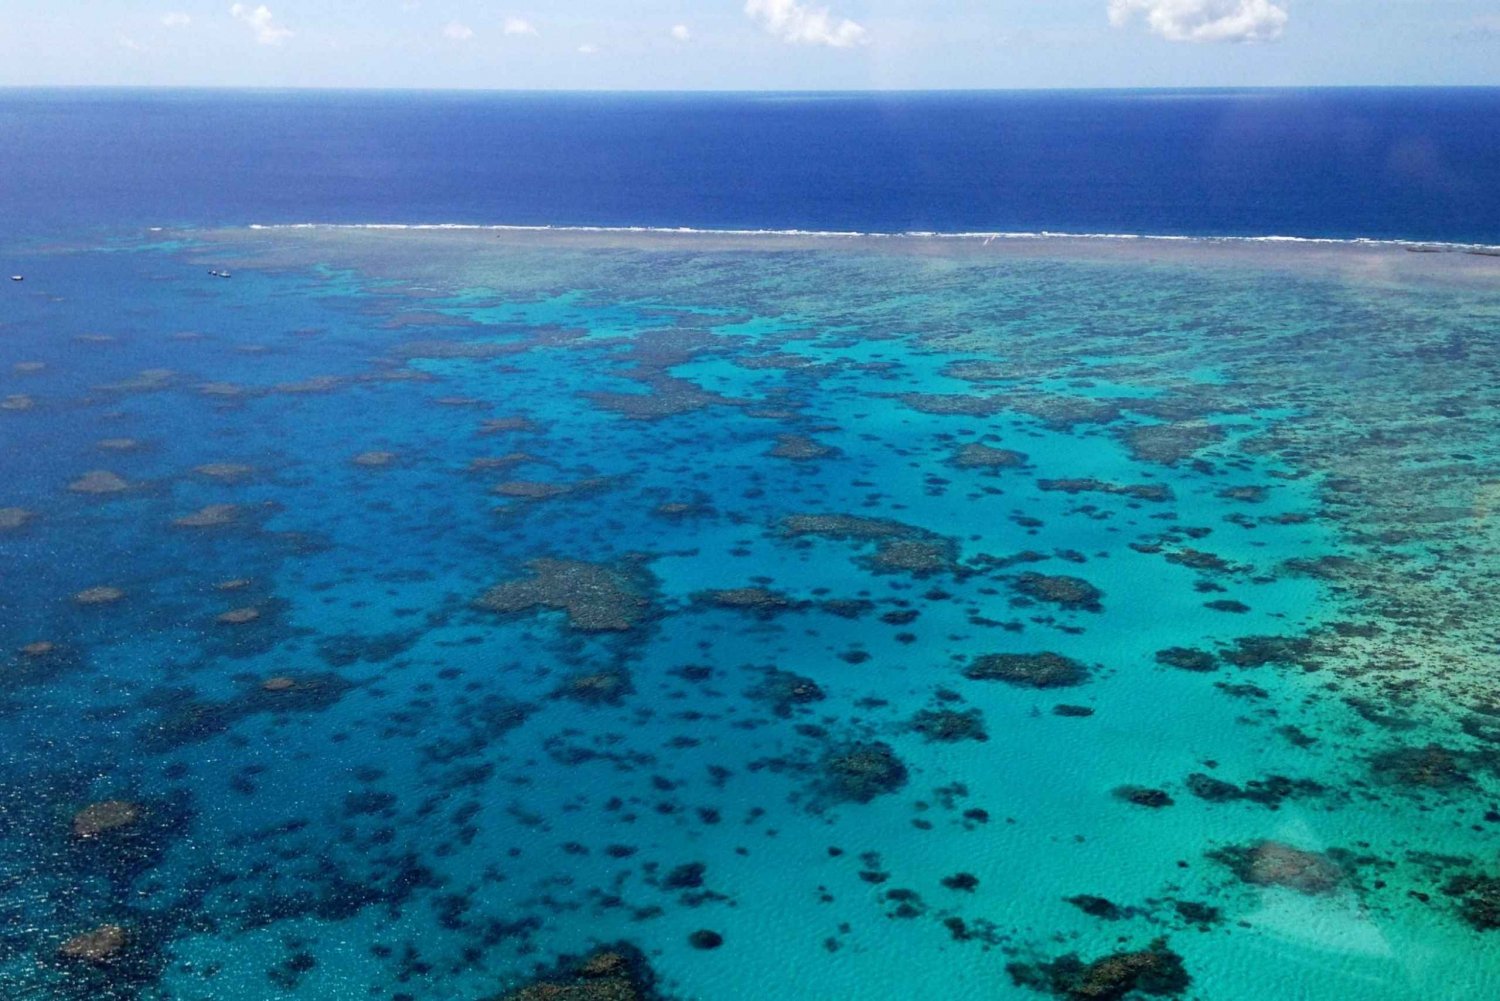 Cairns: Reef & Port Douglas Scenic Flight